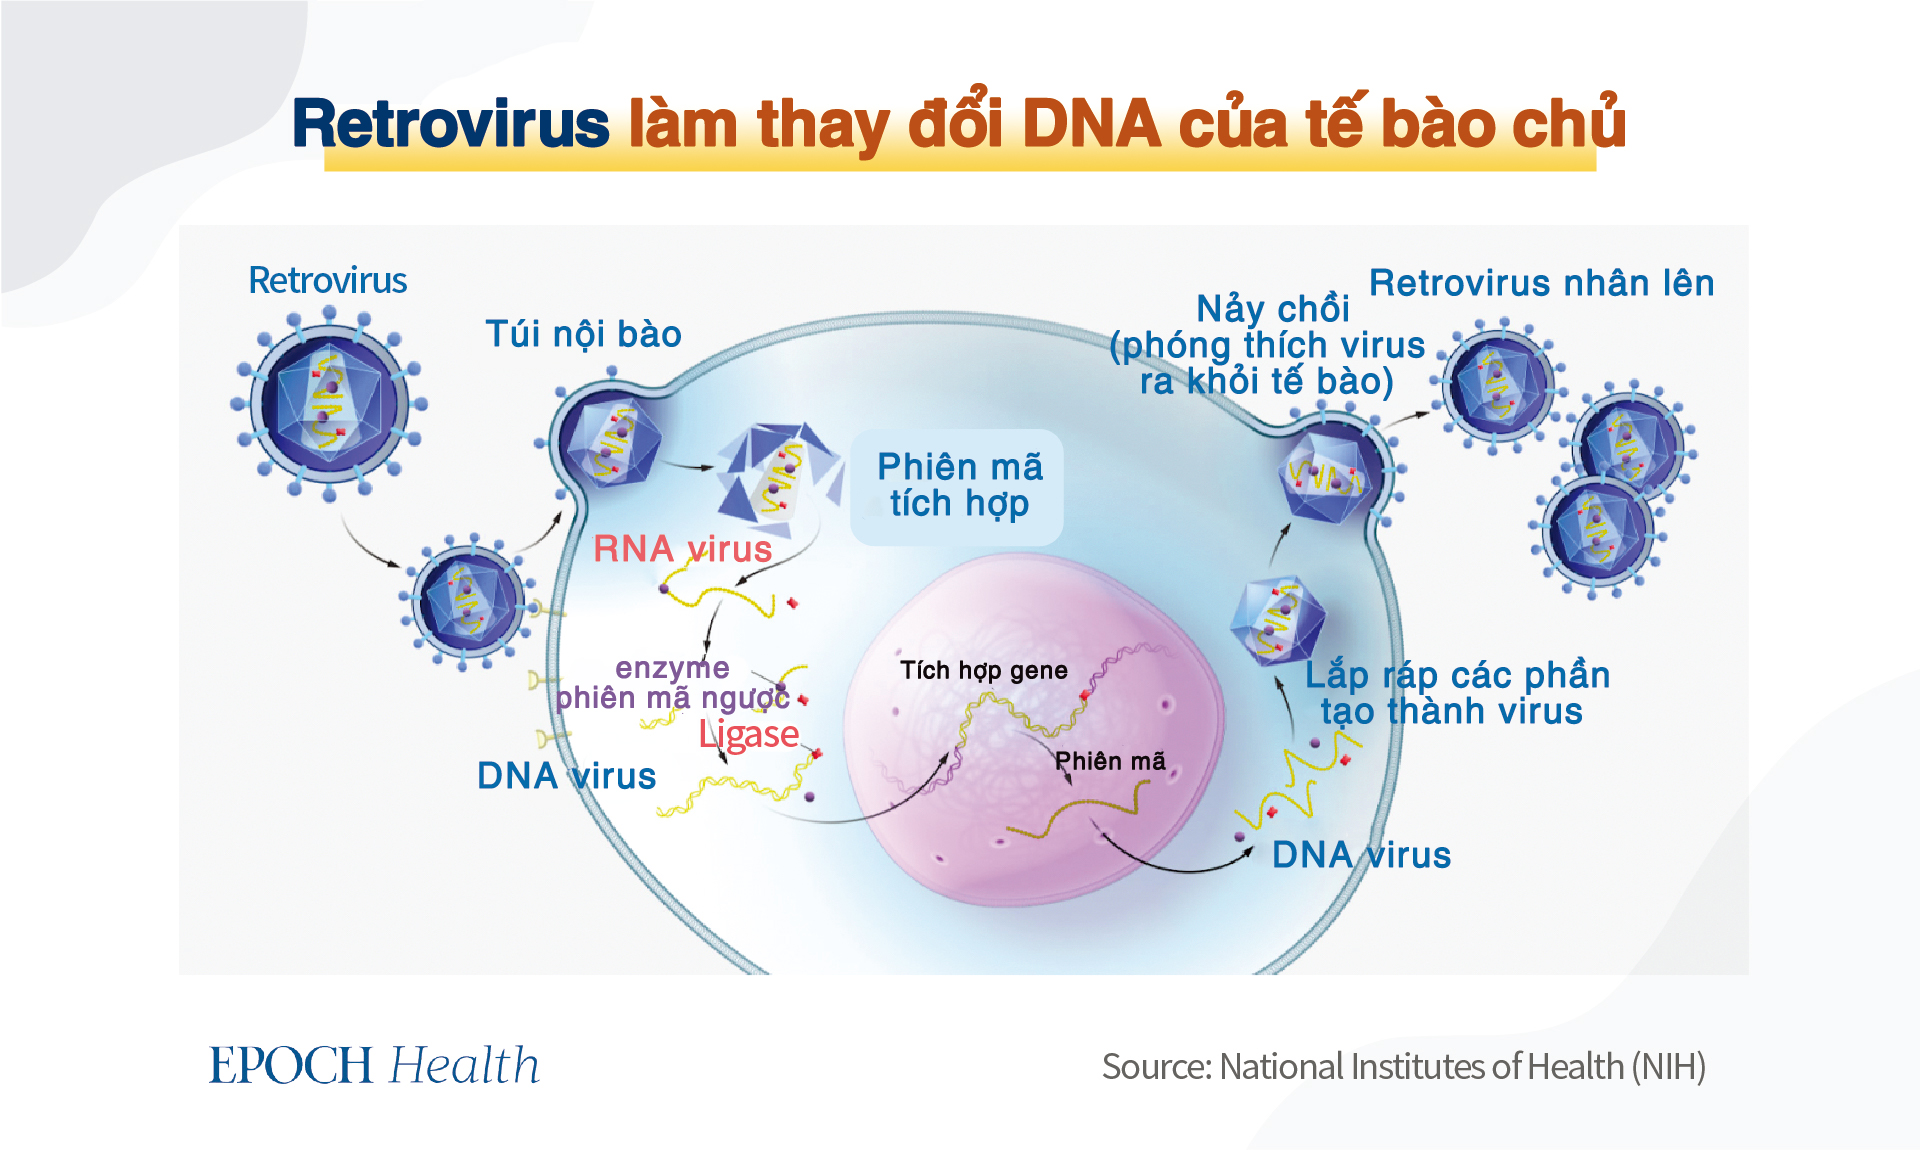 Retrovirus chiếm 8% DNA của người, có thể tốt cho miễn dịch